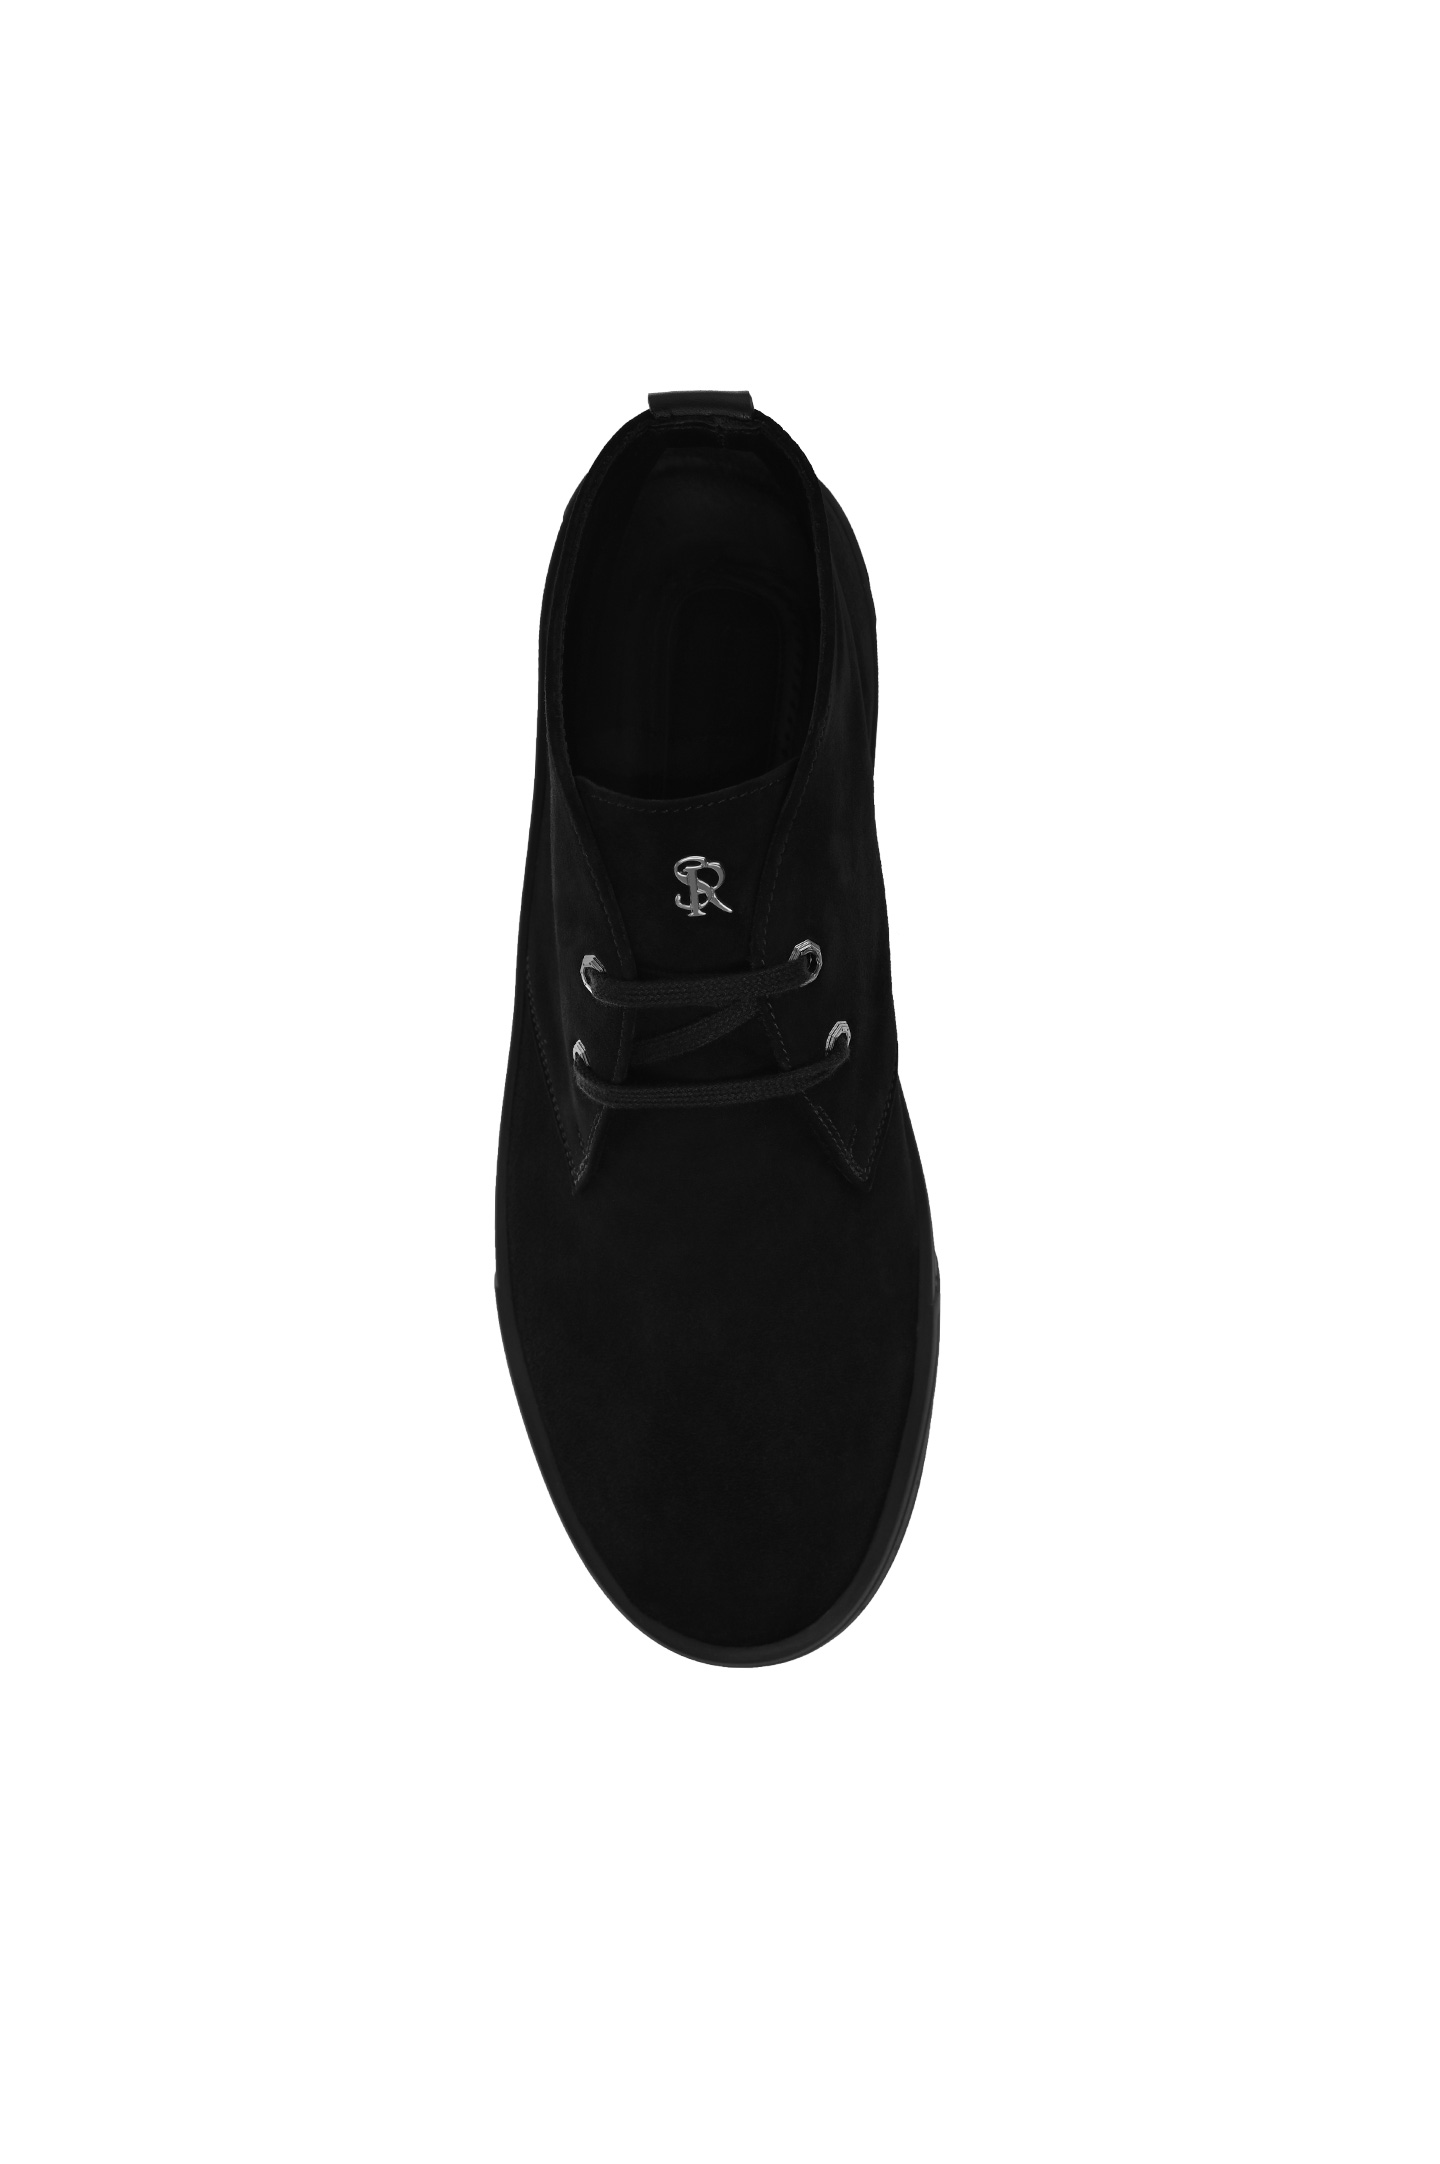 Ботинки STEFANO RICCI UV23_G4186 SDWY, цвет: Черный, Мужской